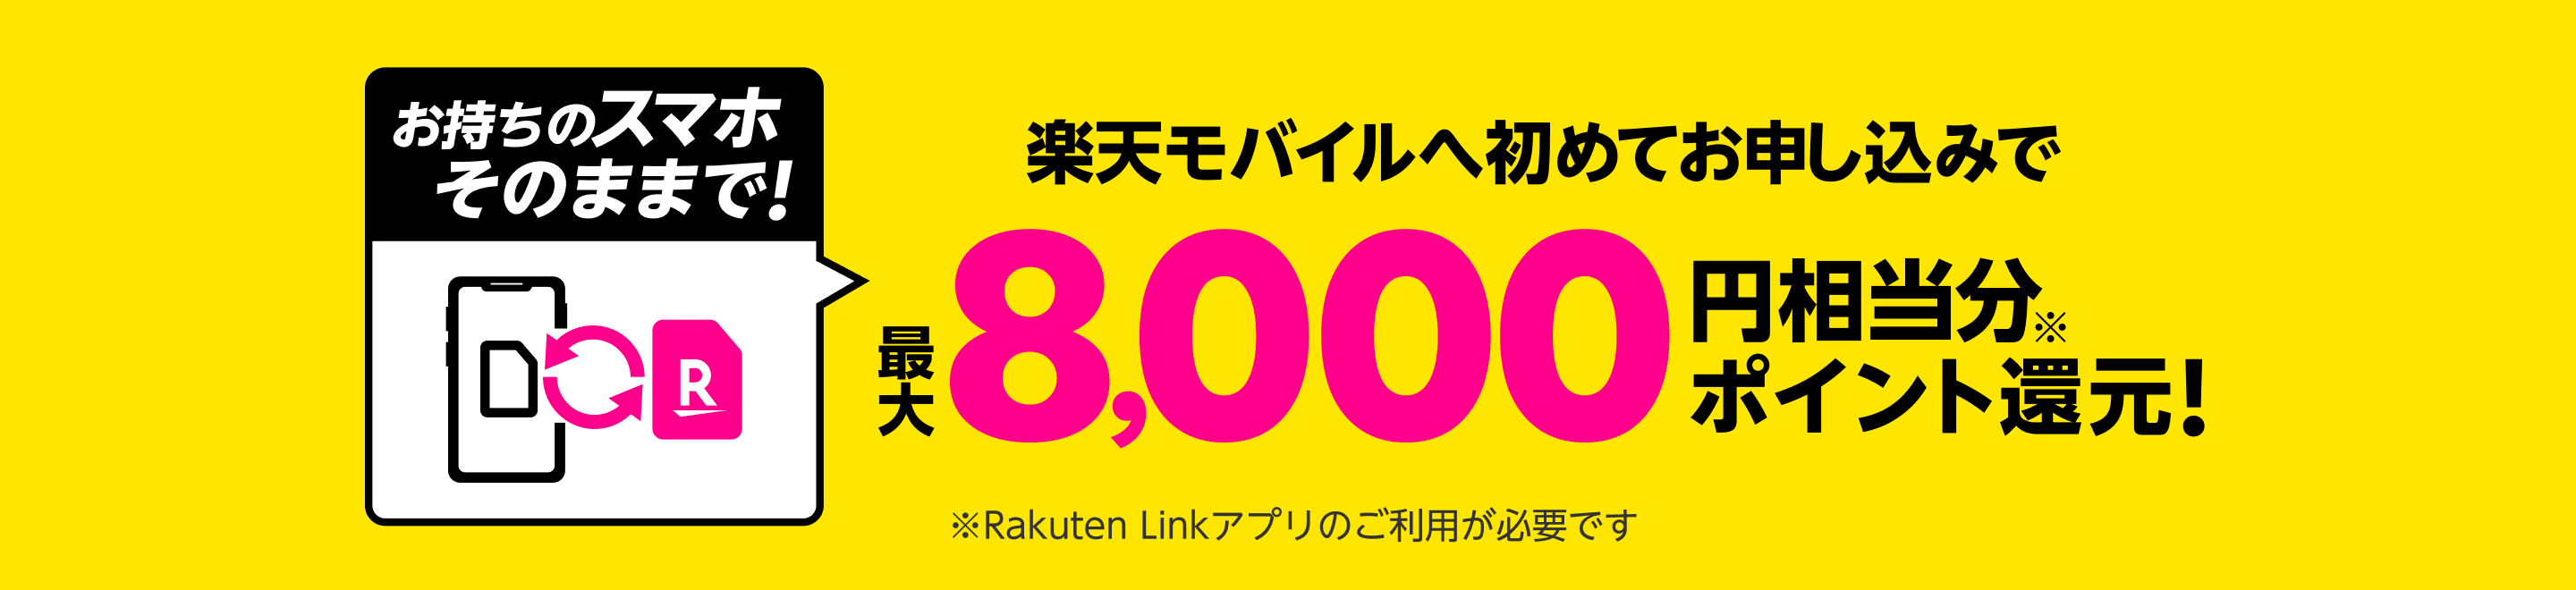 Rakuten UN-LIMIT 初めてお申し込みでお持ちのスマホそのままOK!最大8,000円相当分※ ポイント還元! ※Rakuten Linkアプリのご利用が必要です